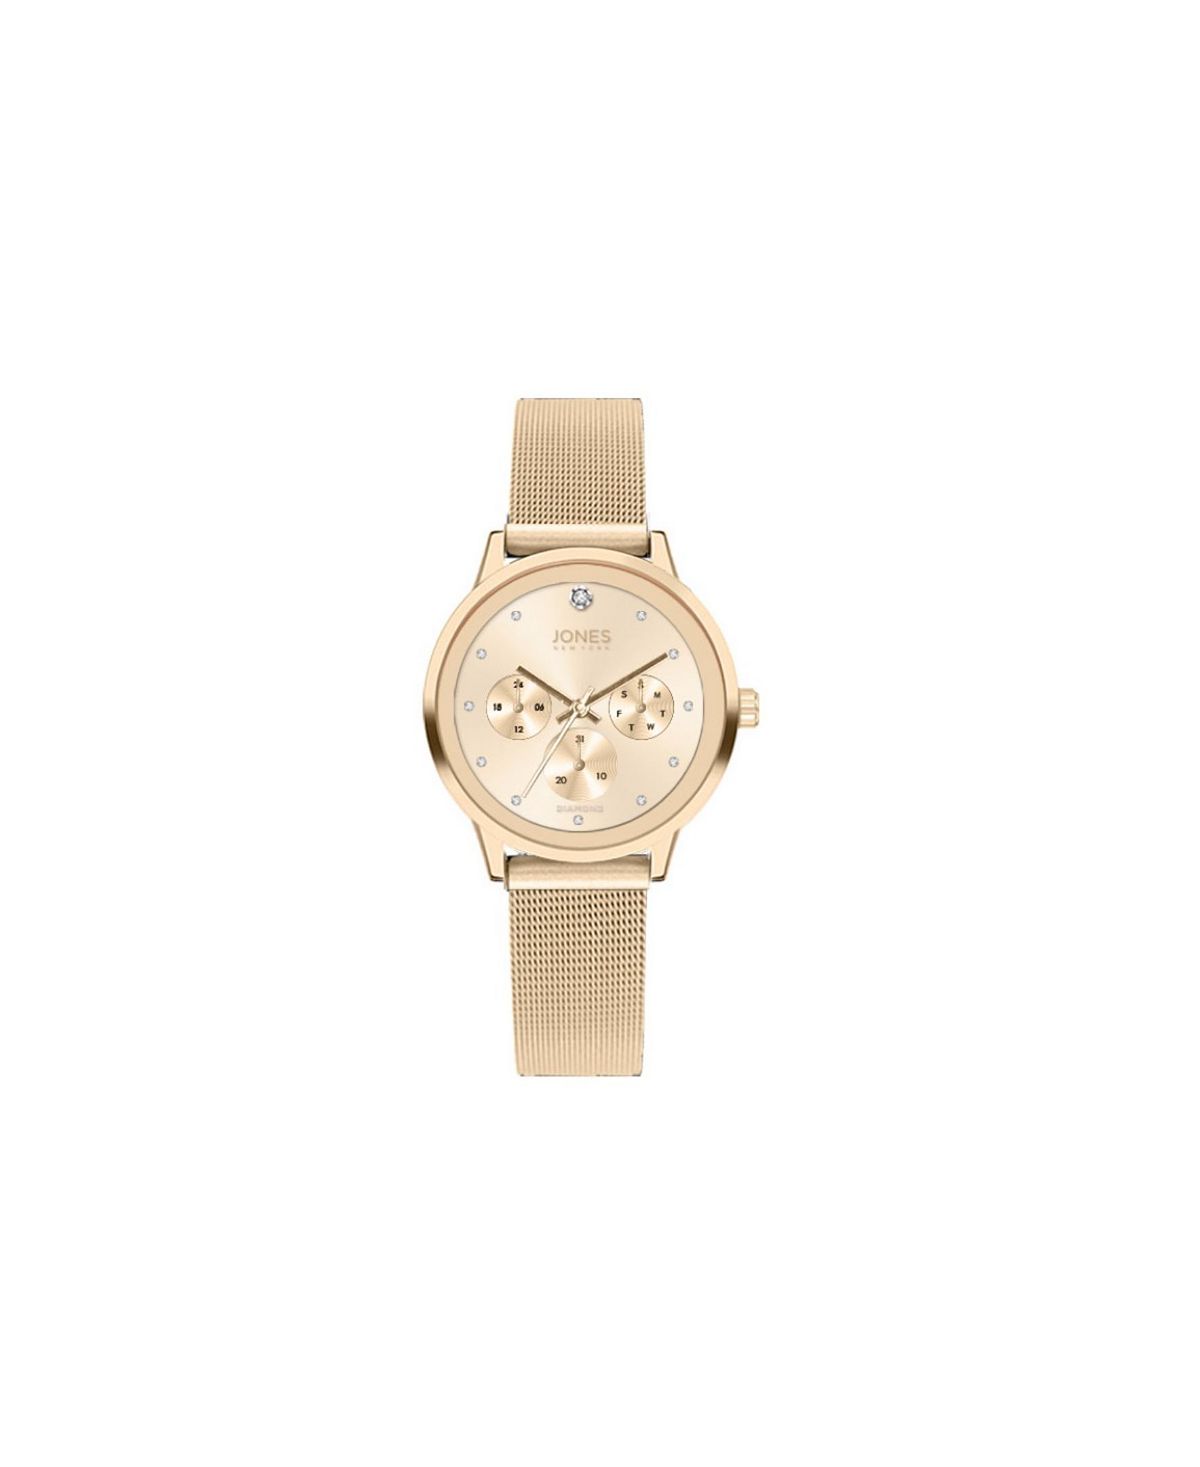 Женские часы-браслет с блестящей золотистой сеткой, 34 мм Jones New York цена и фото